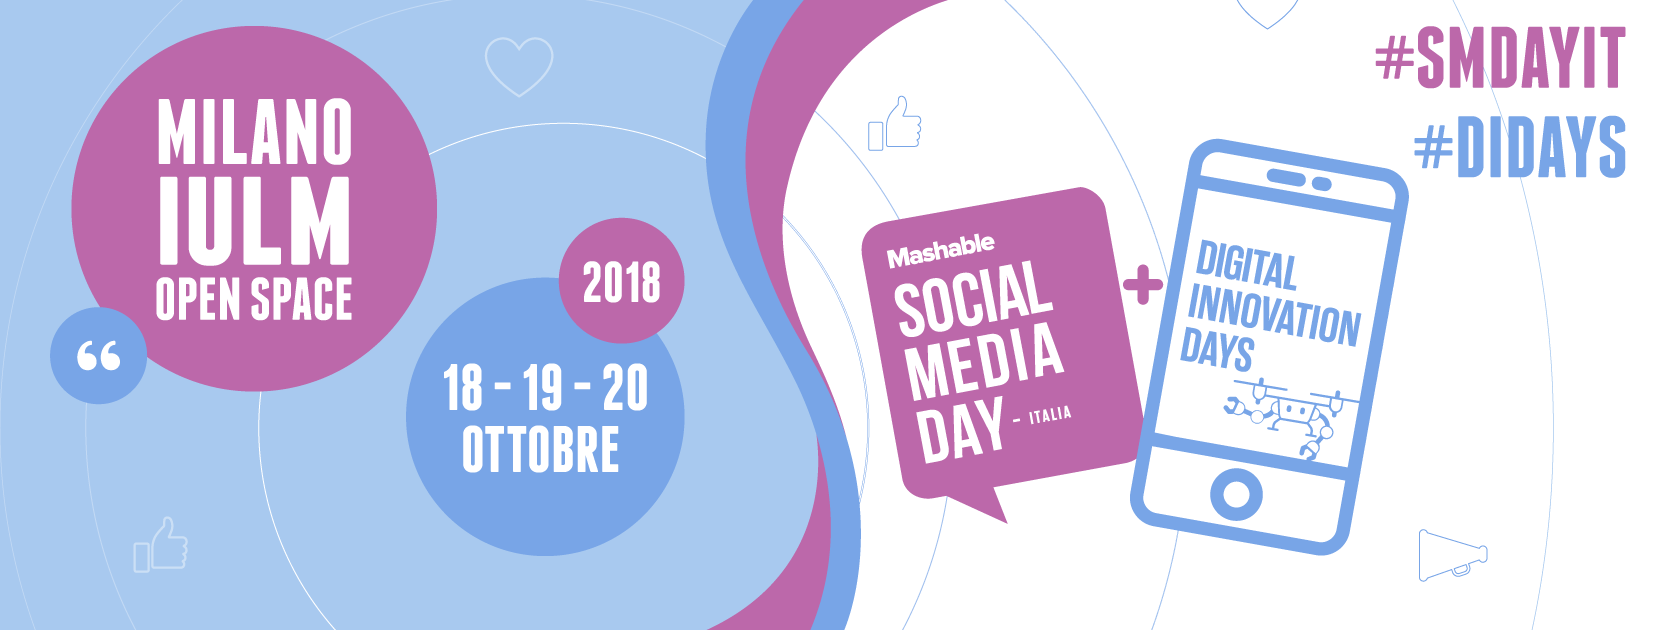 Al Mashable Social Media Day: un contest innovativo per le startup